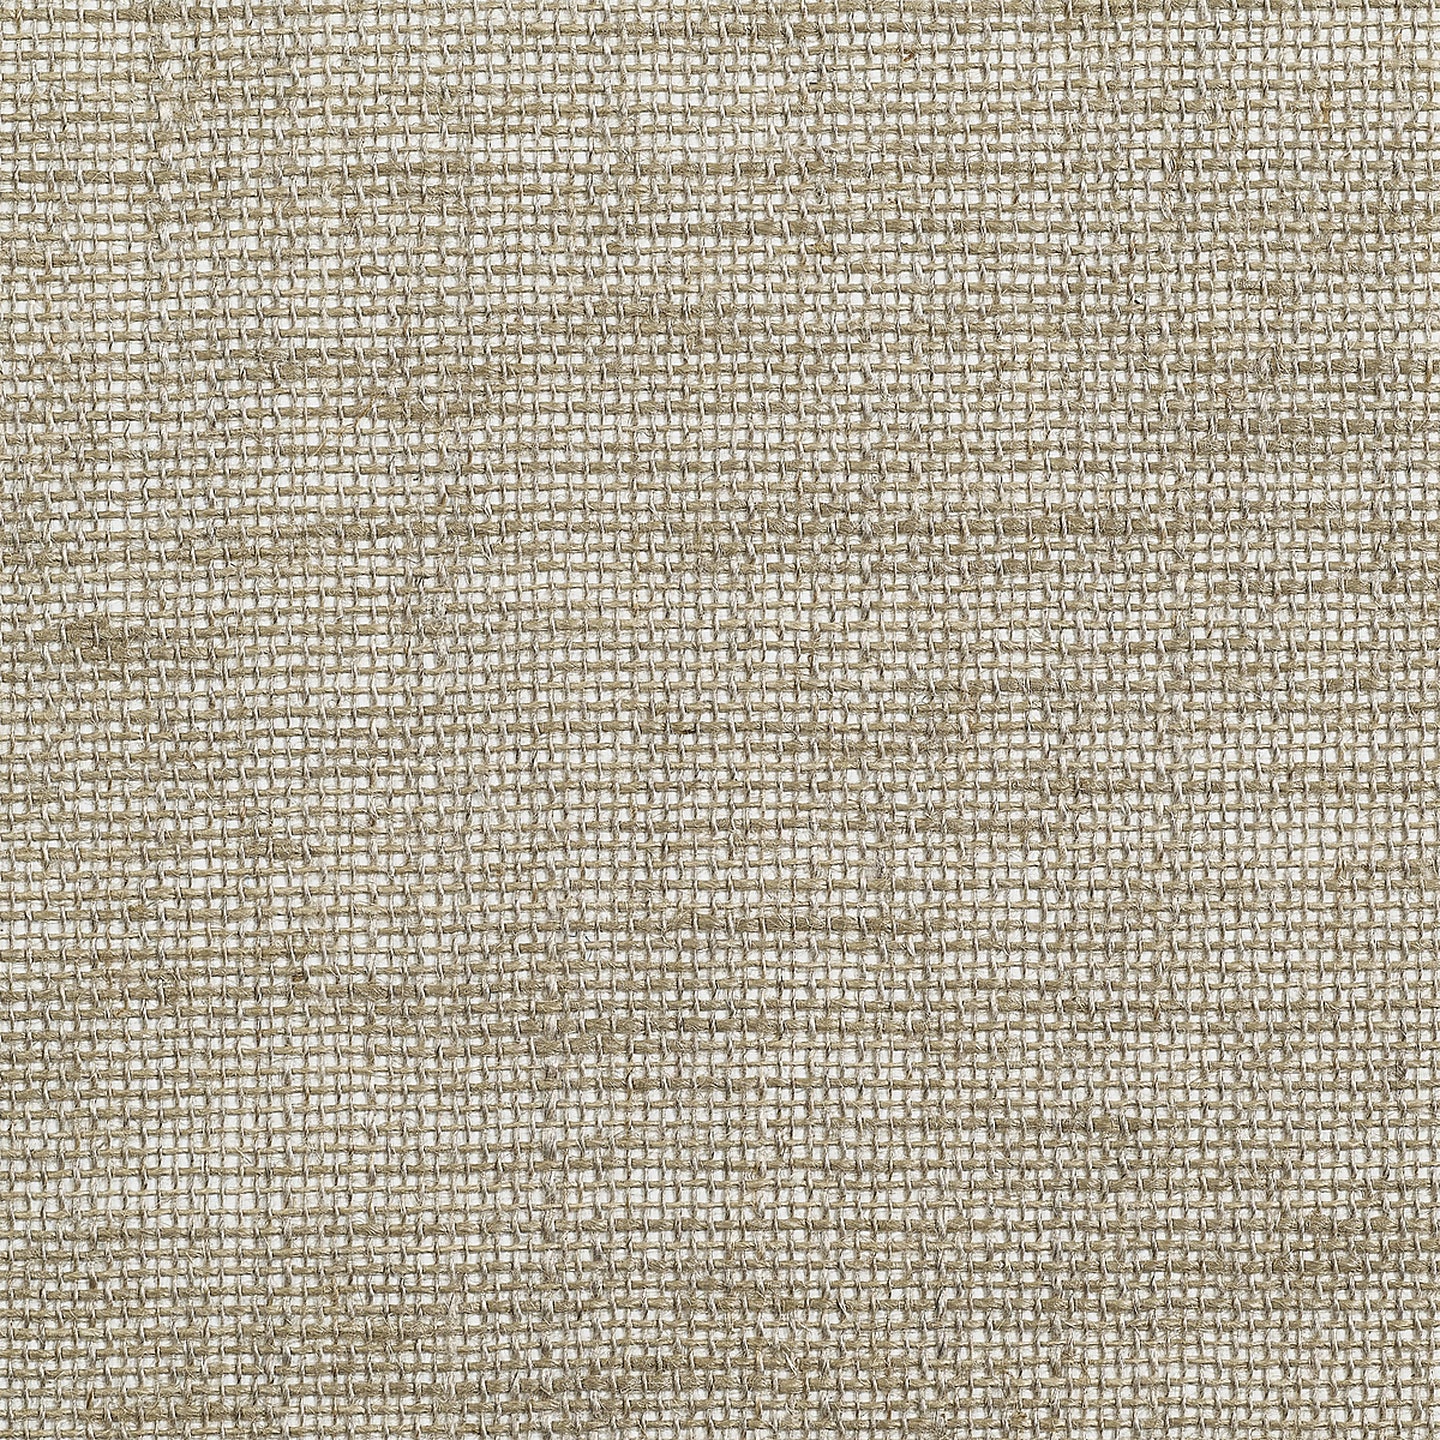 Purchase Phillip Jeffries Wallpaper - 10435, Linen Weave - Natural Sails 